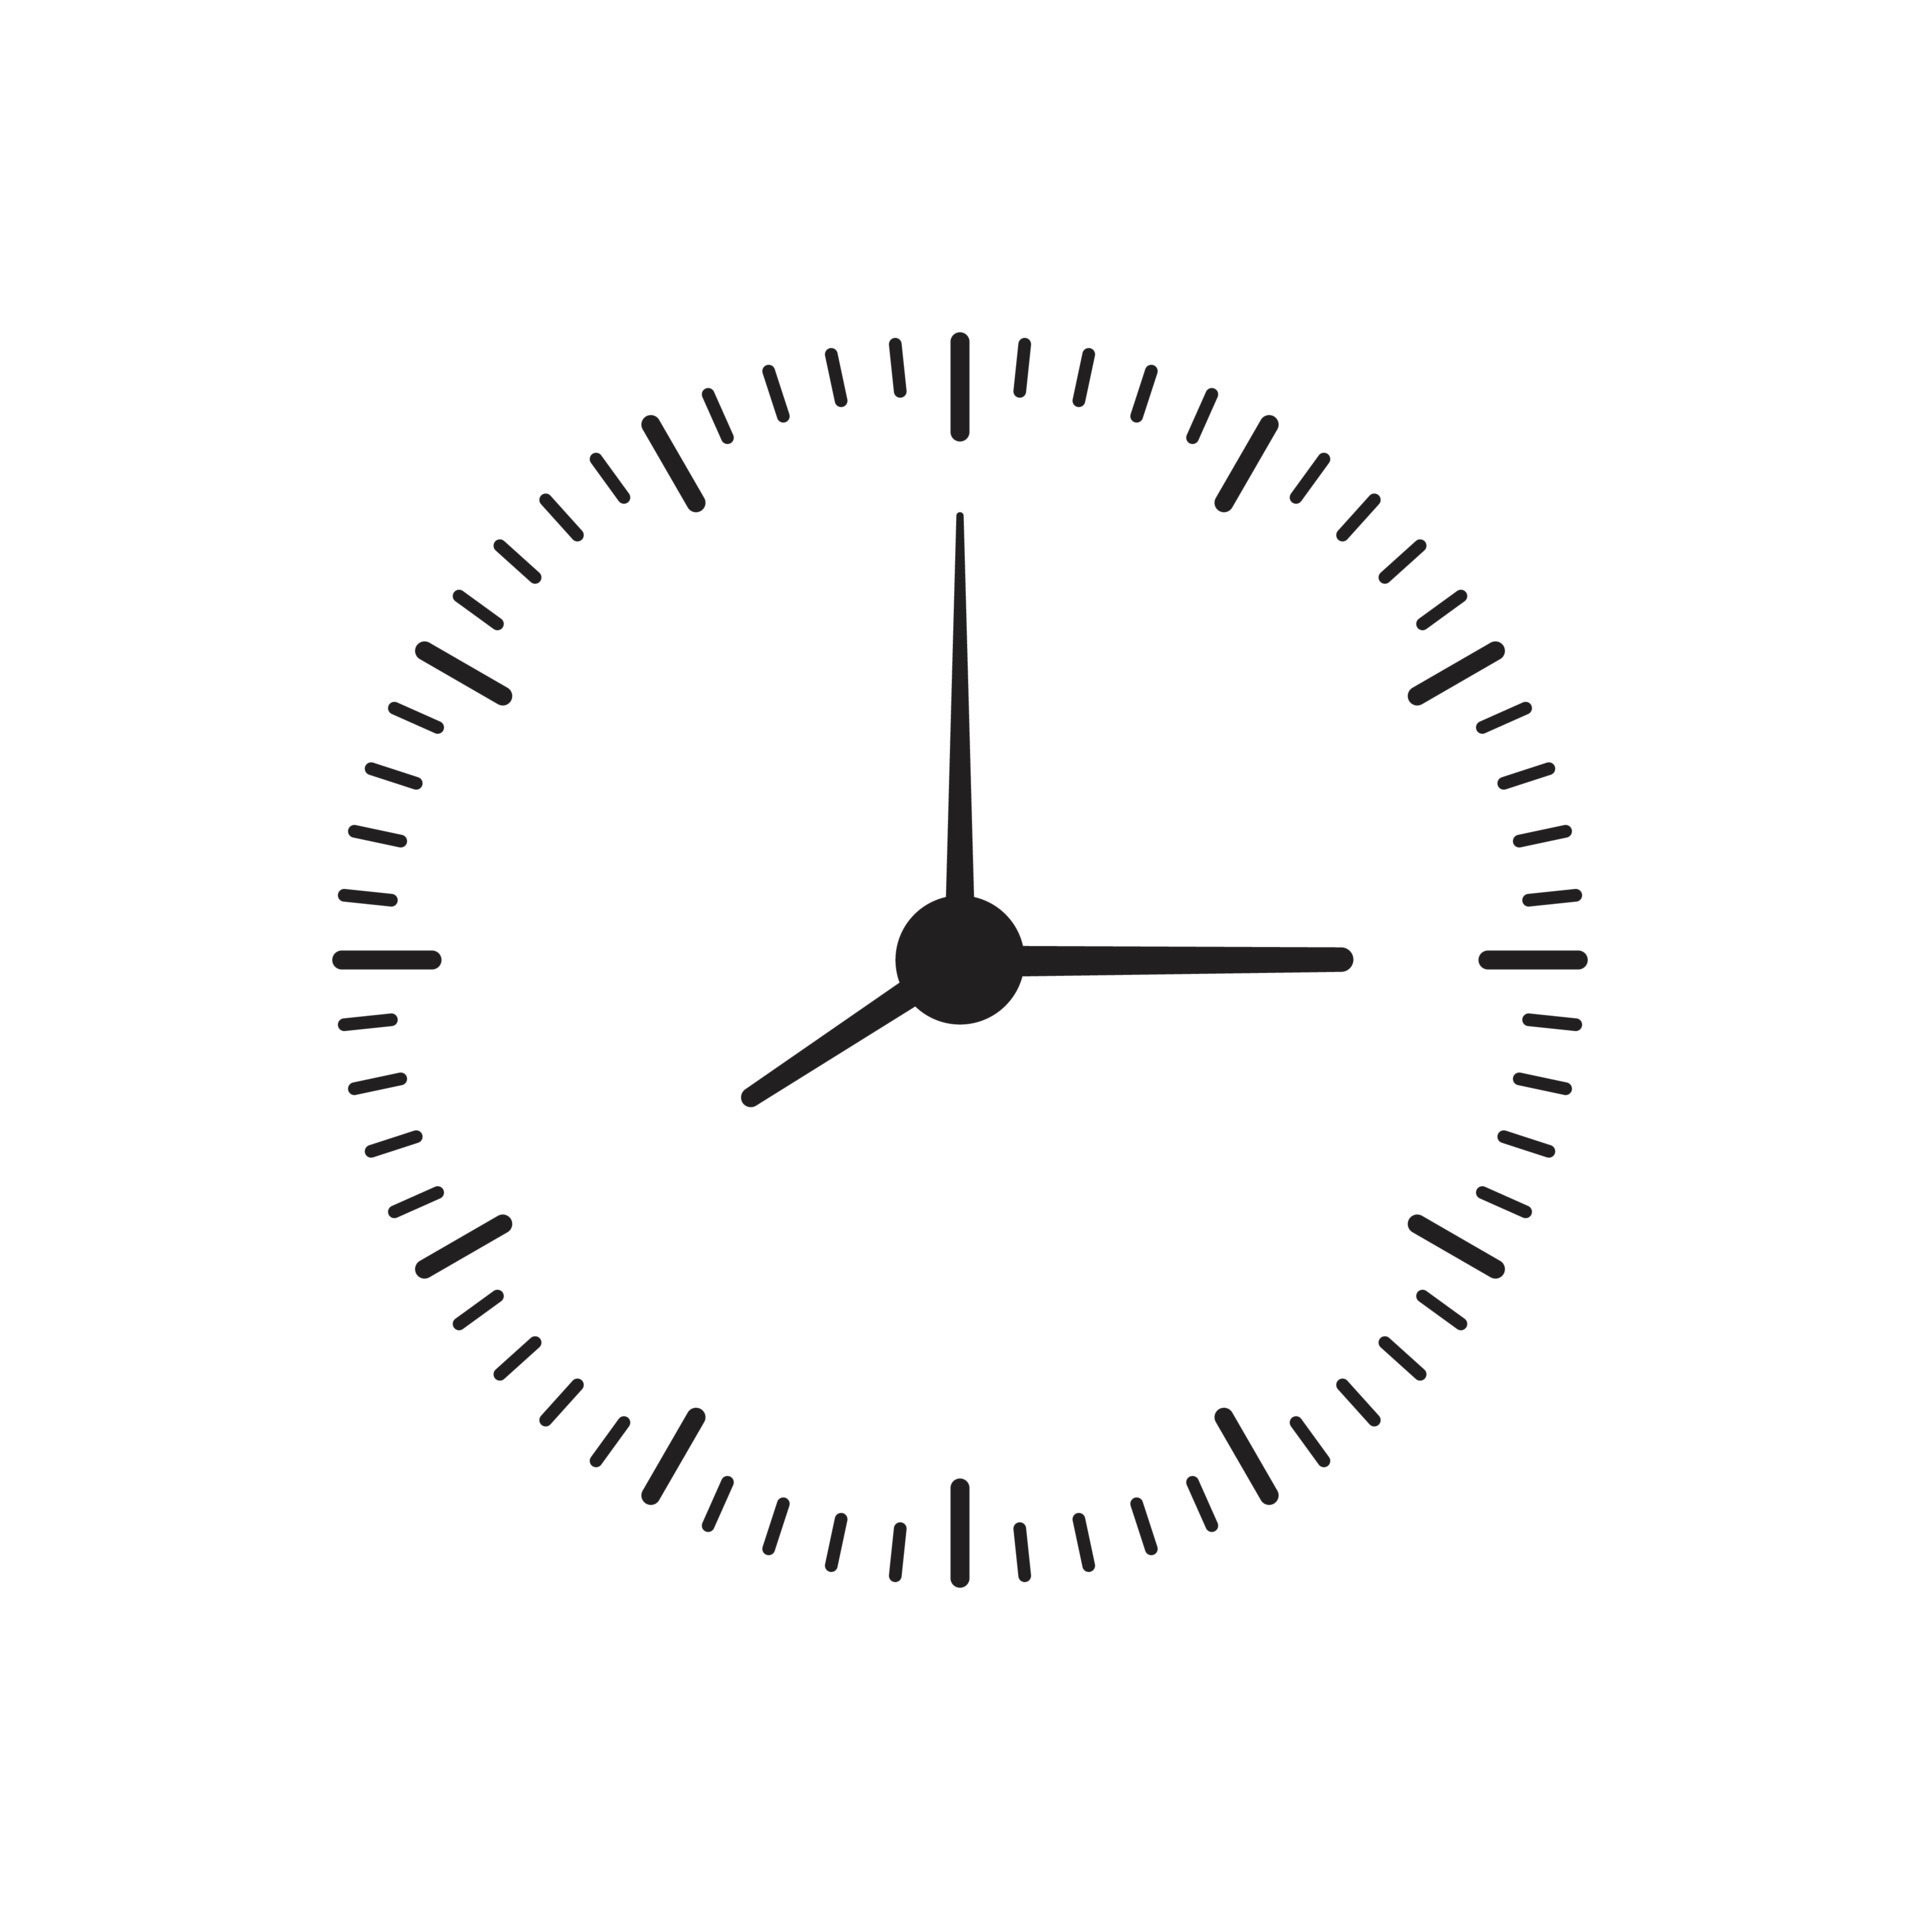 Le Visage De L'horloge Avec Des Icônes Météo Au Lieu D'heures Clip Art  Libres De Droits, Svg, Vecteurs Et Illustration. Image 47463689